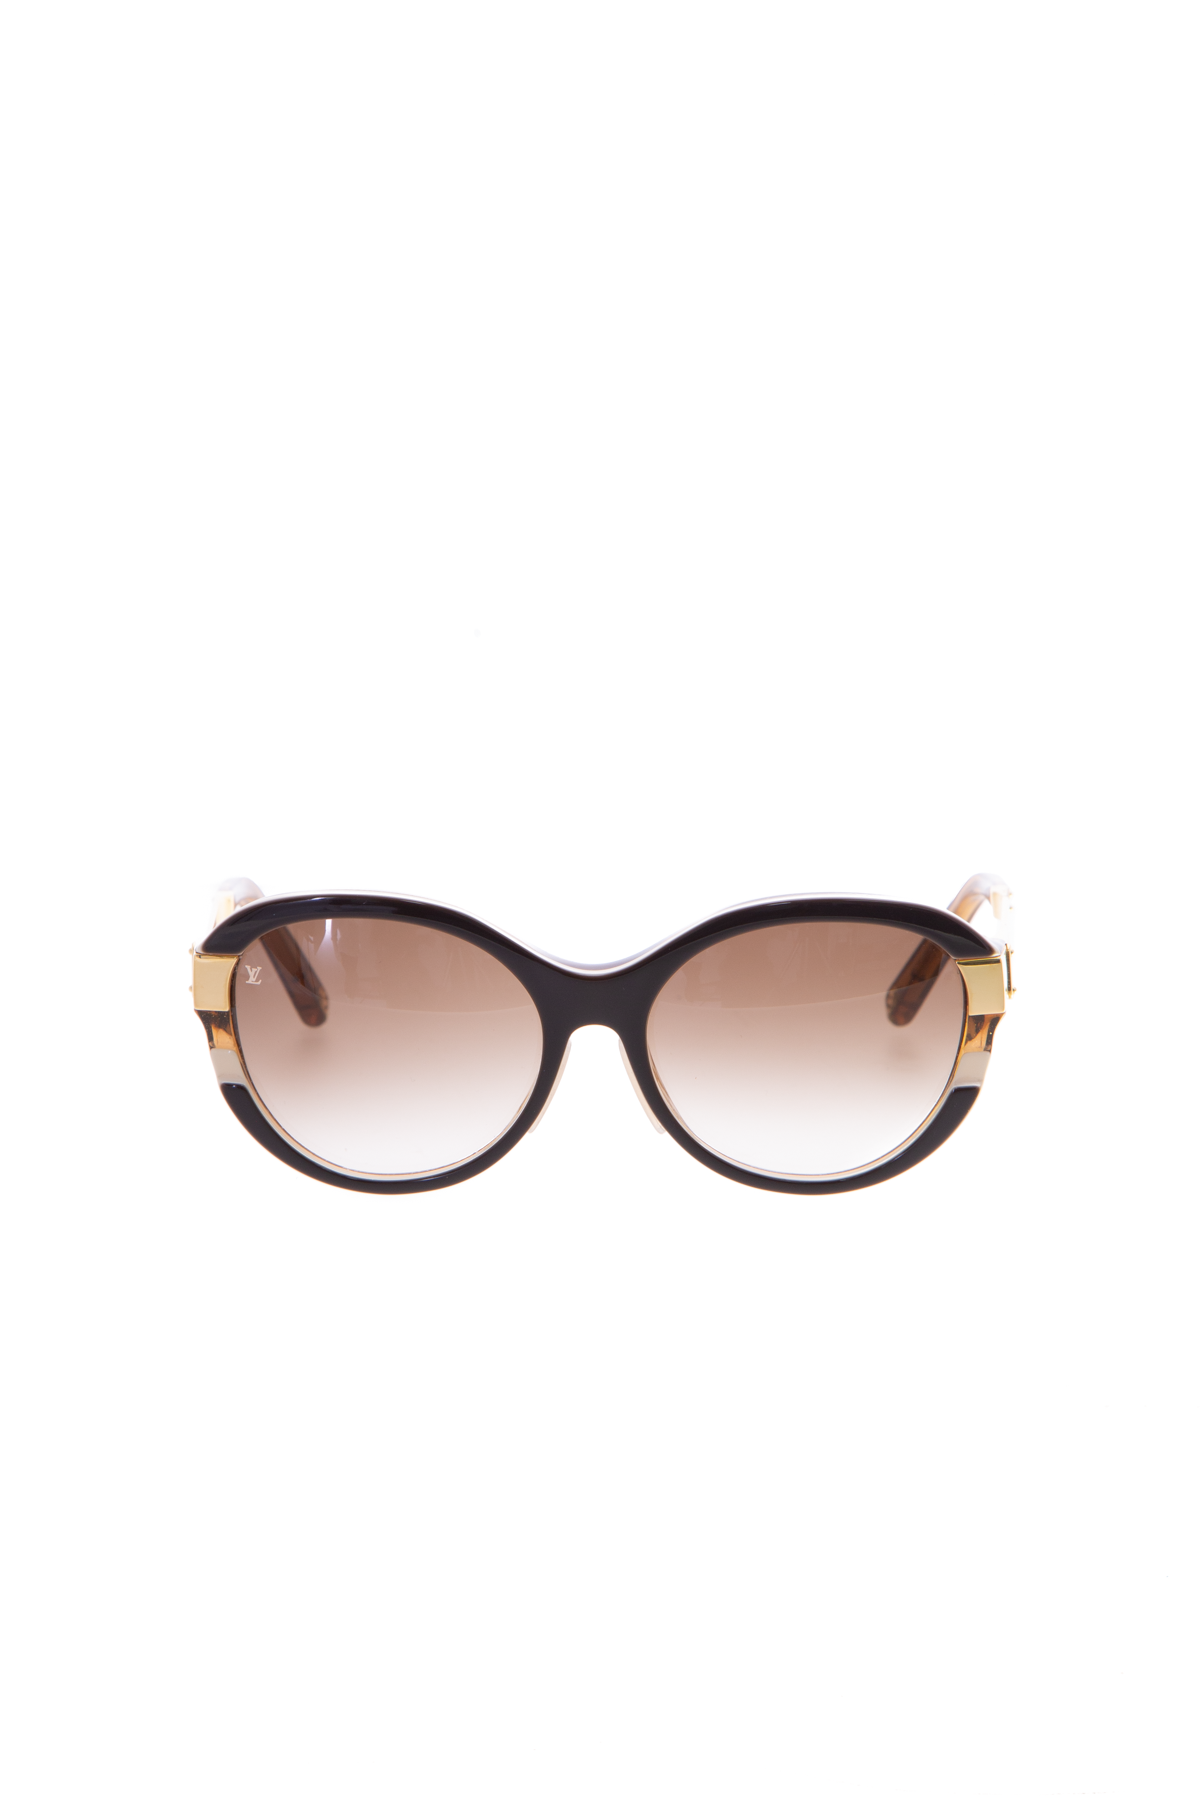 Louis Vuitton - Petit Soupcon Cat Eye Sunglasses Brown